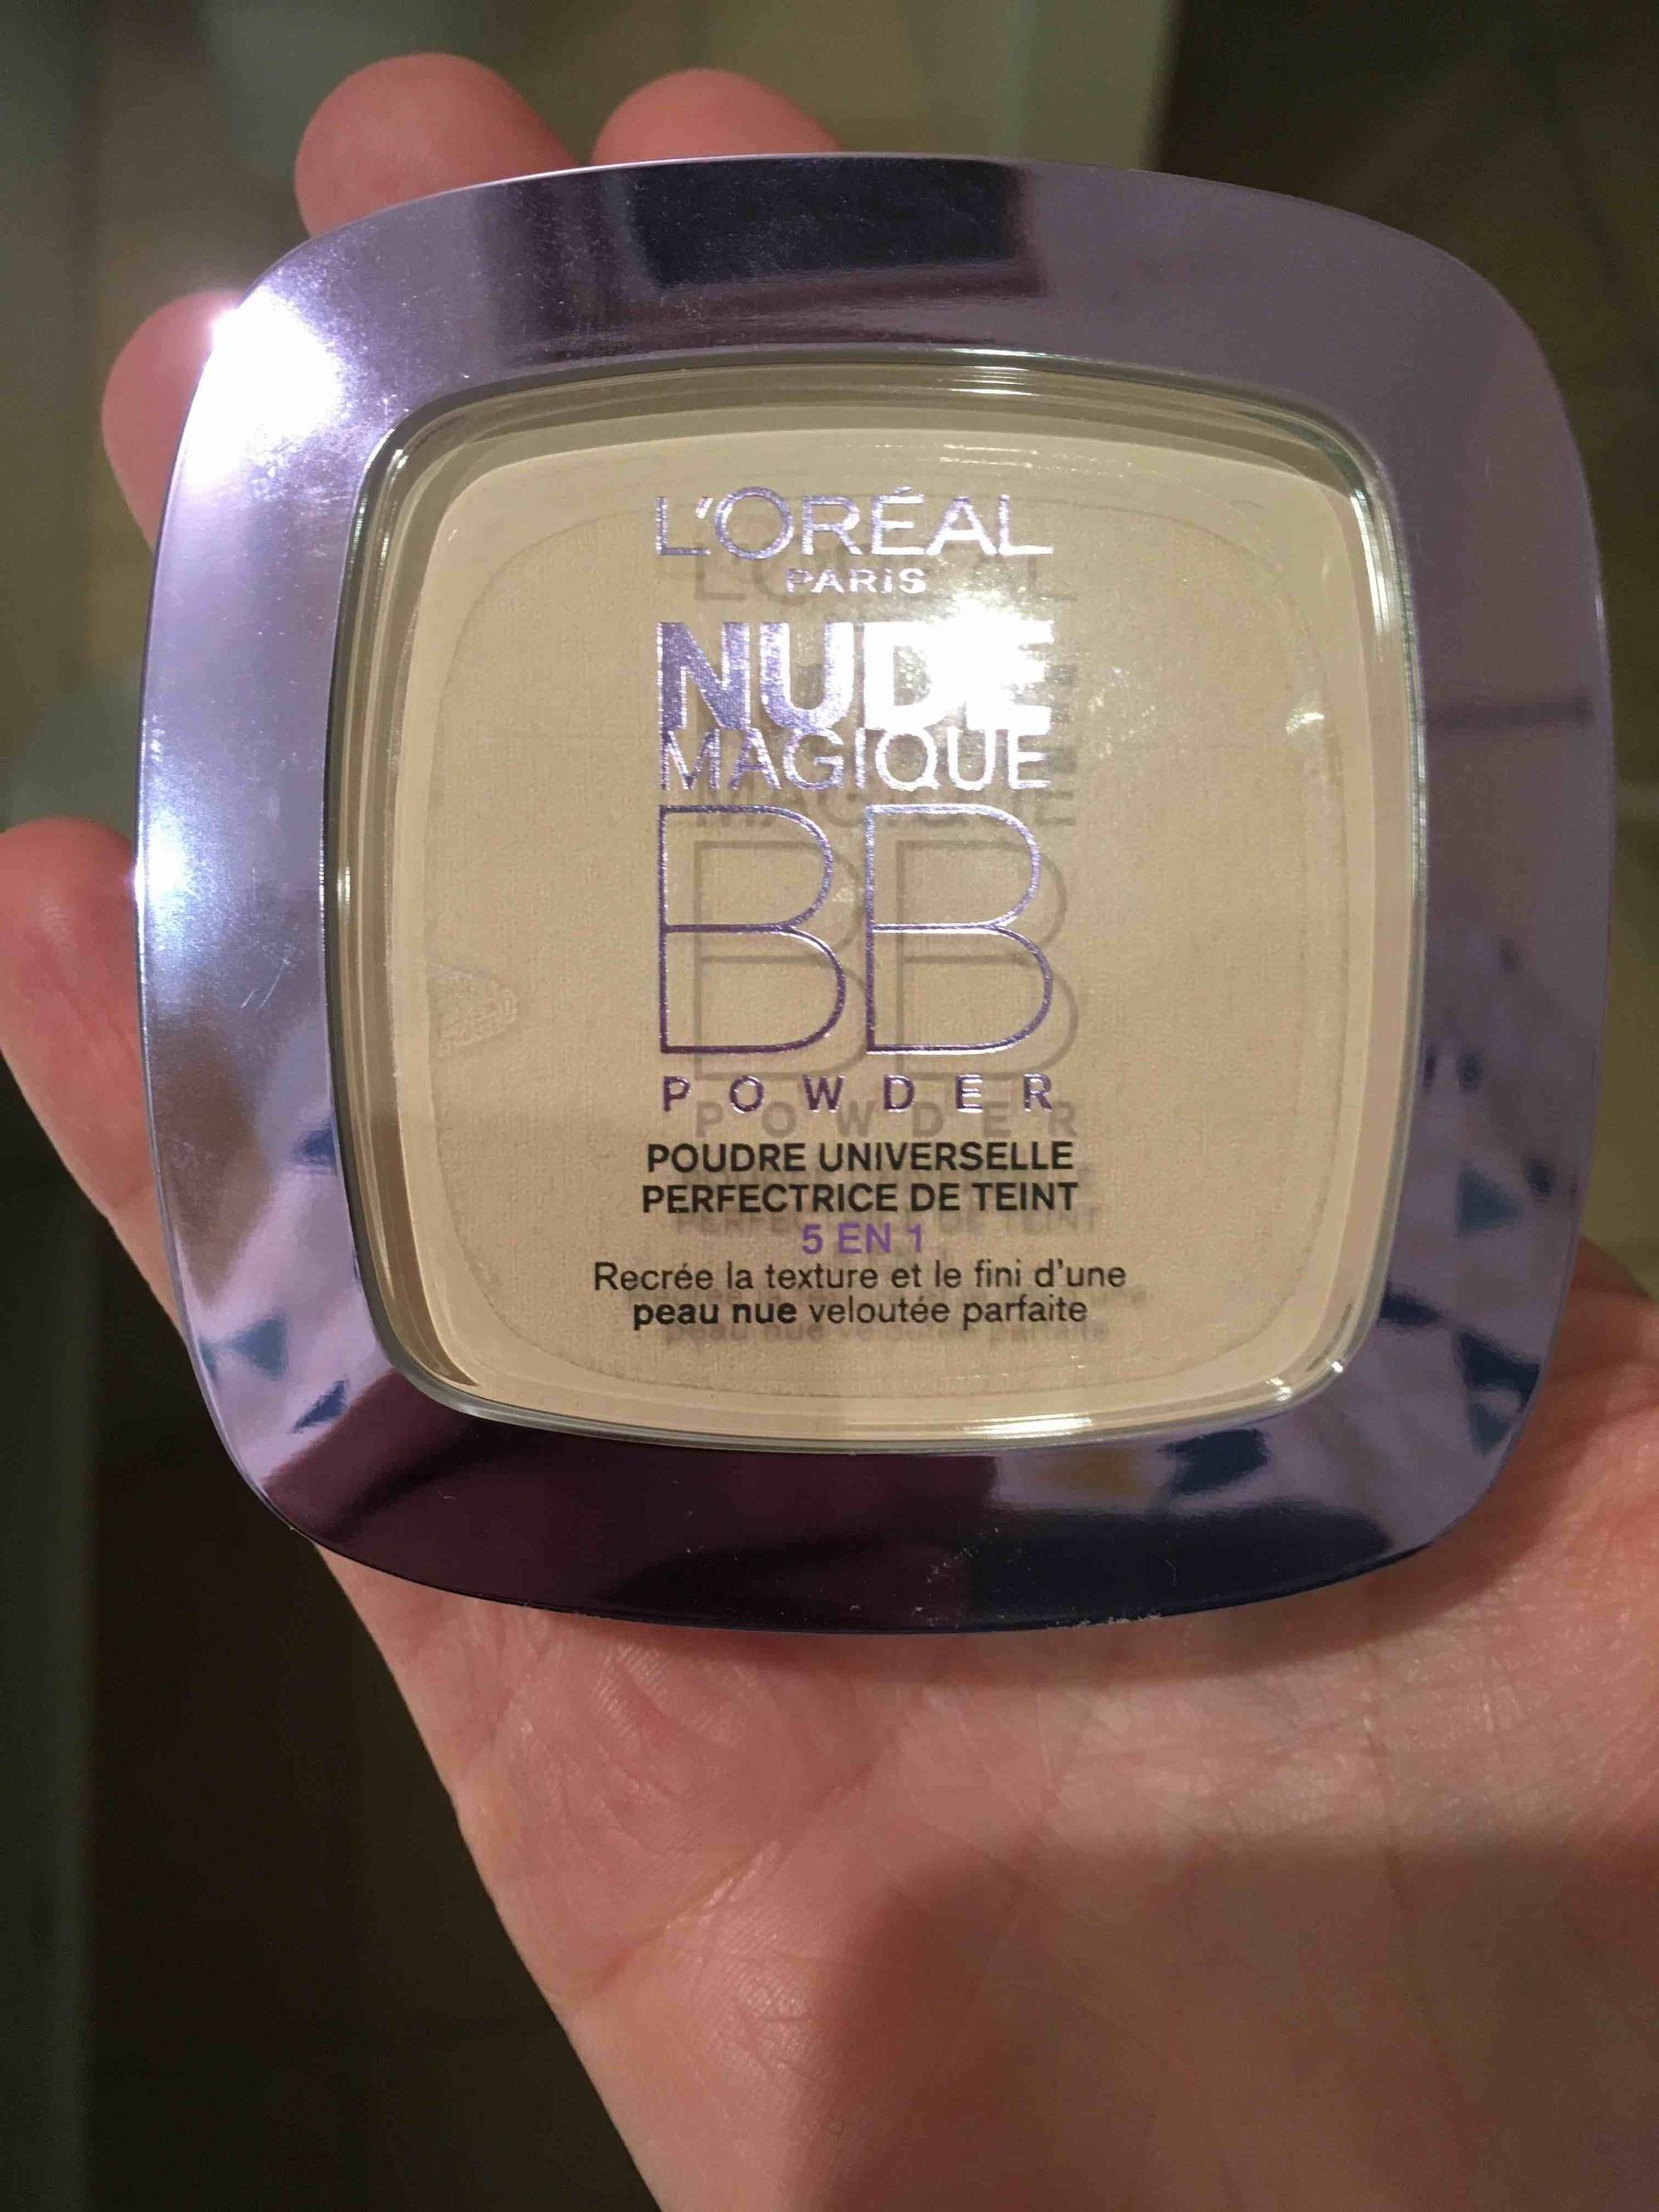 L'ORÉAL - Nude magic BB powder - Poudre universelle perfectrice de teint